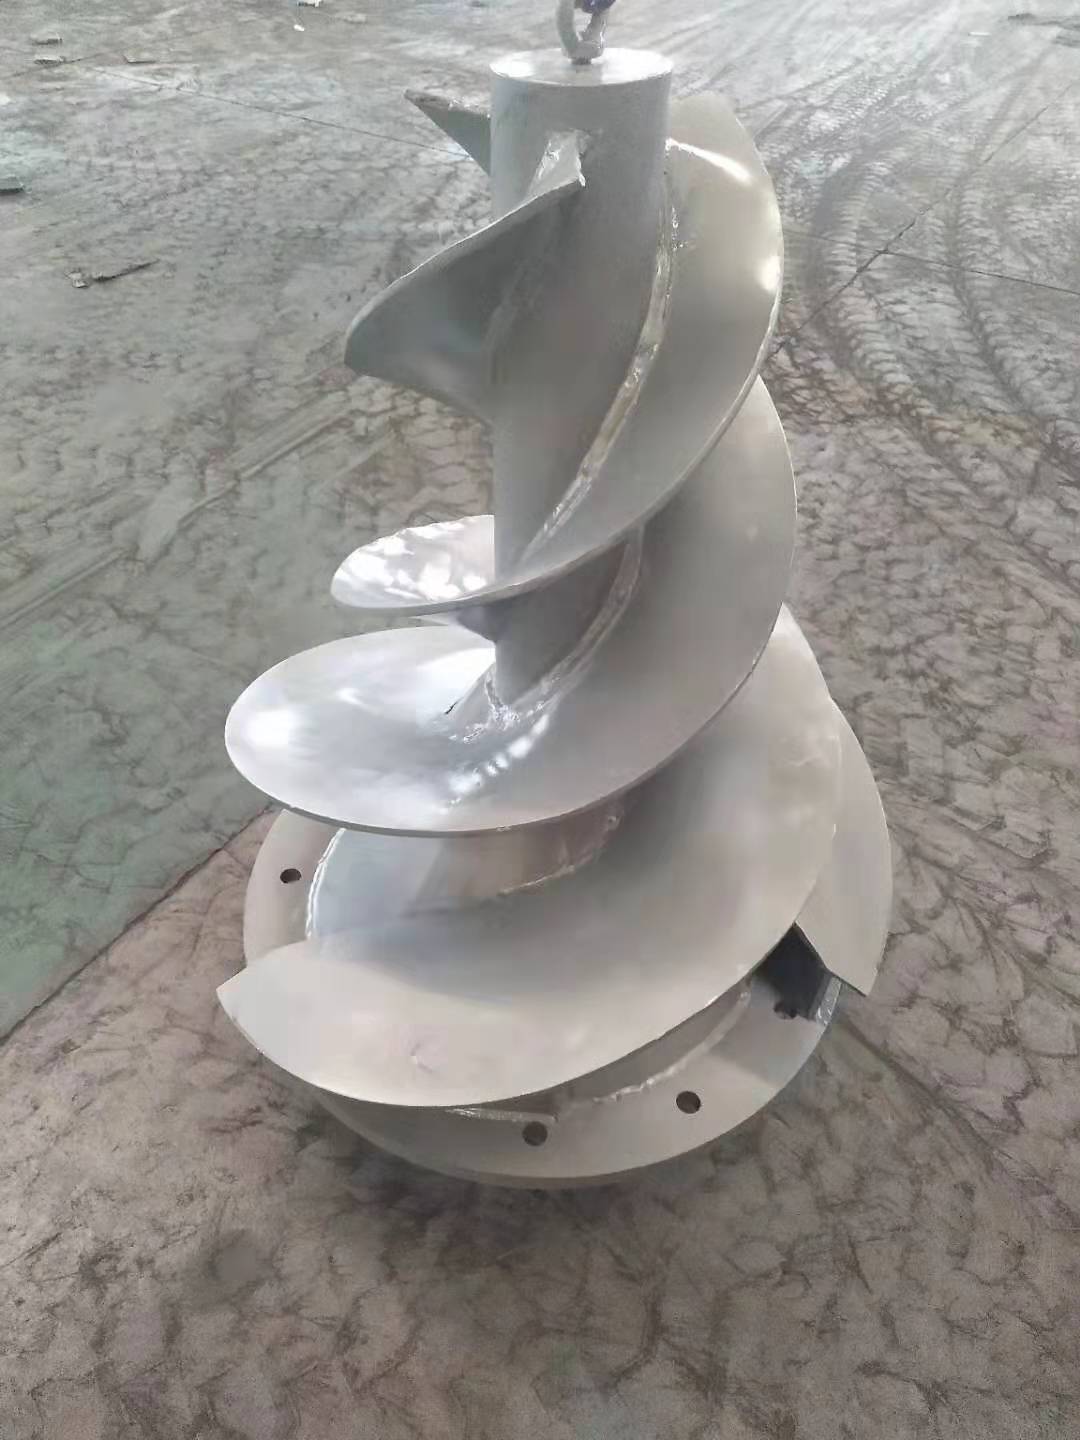 Pulp Making Hydrapulper Impeller Rotor